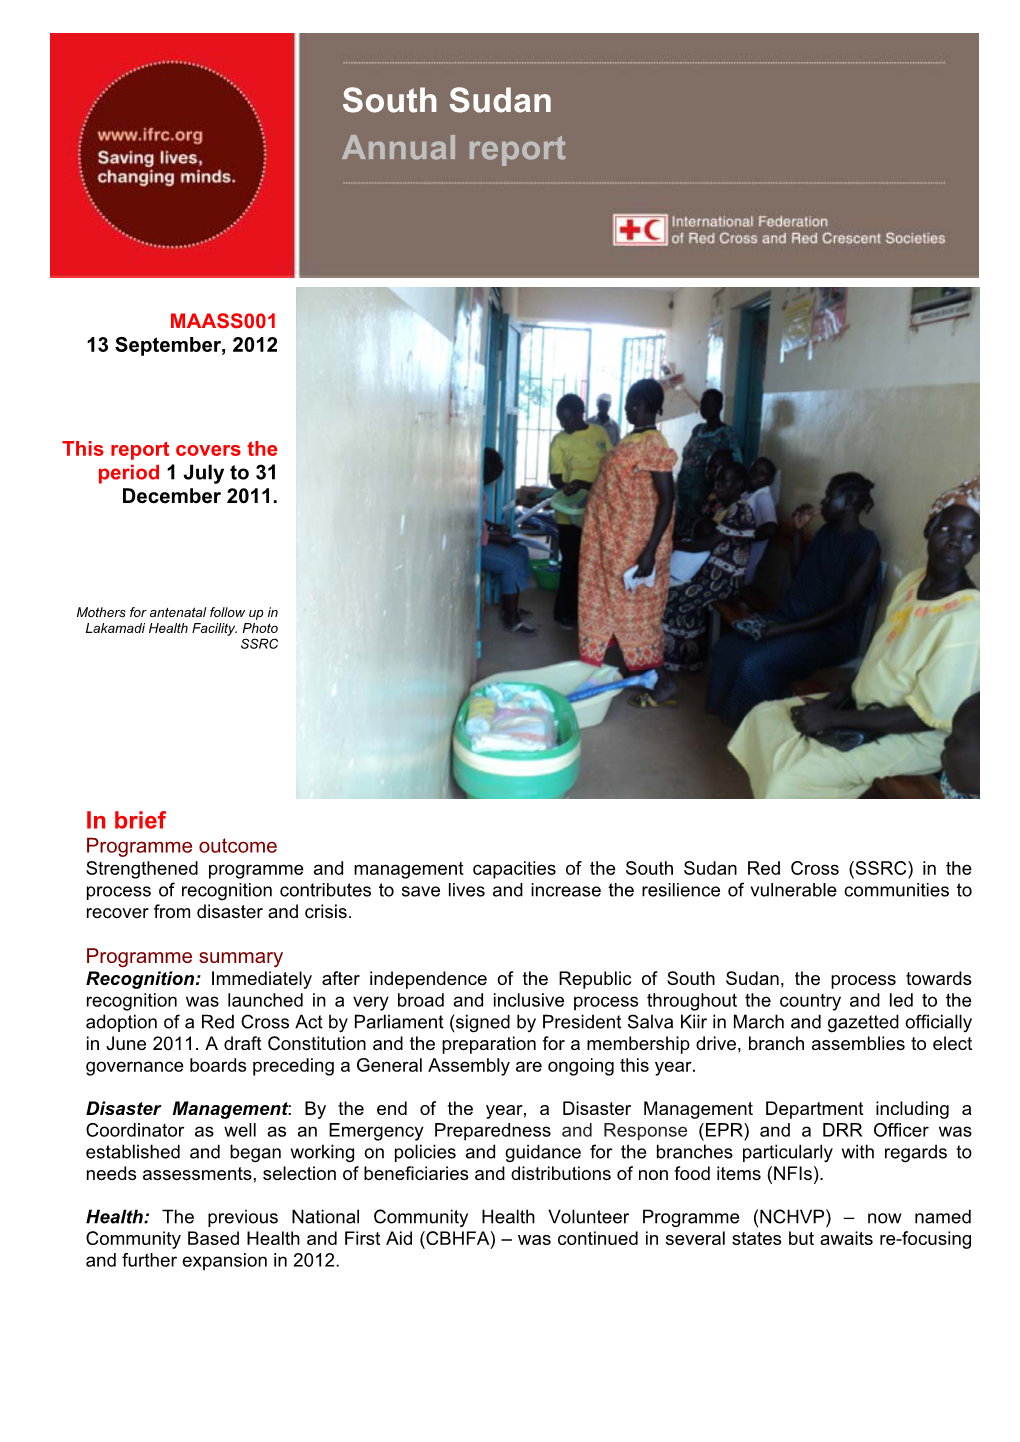 South Sudan Annual Report